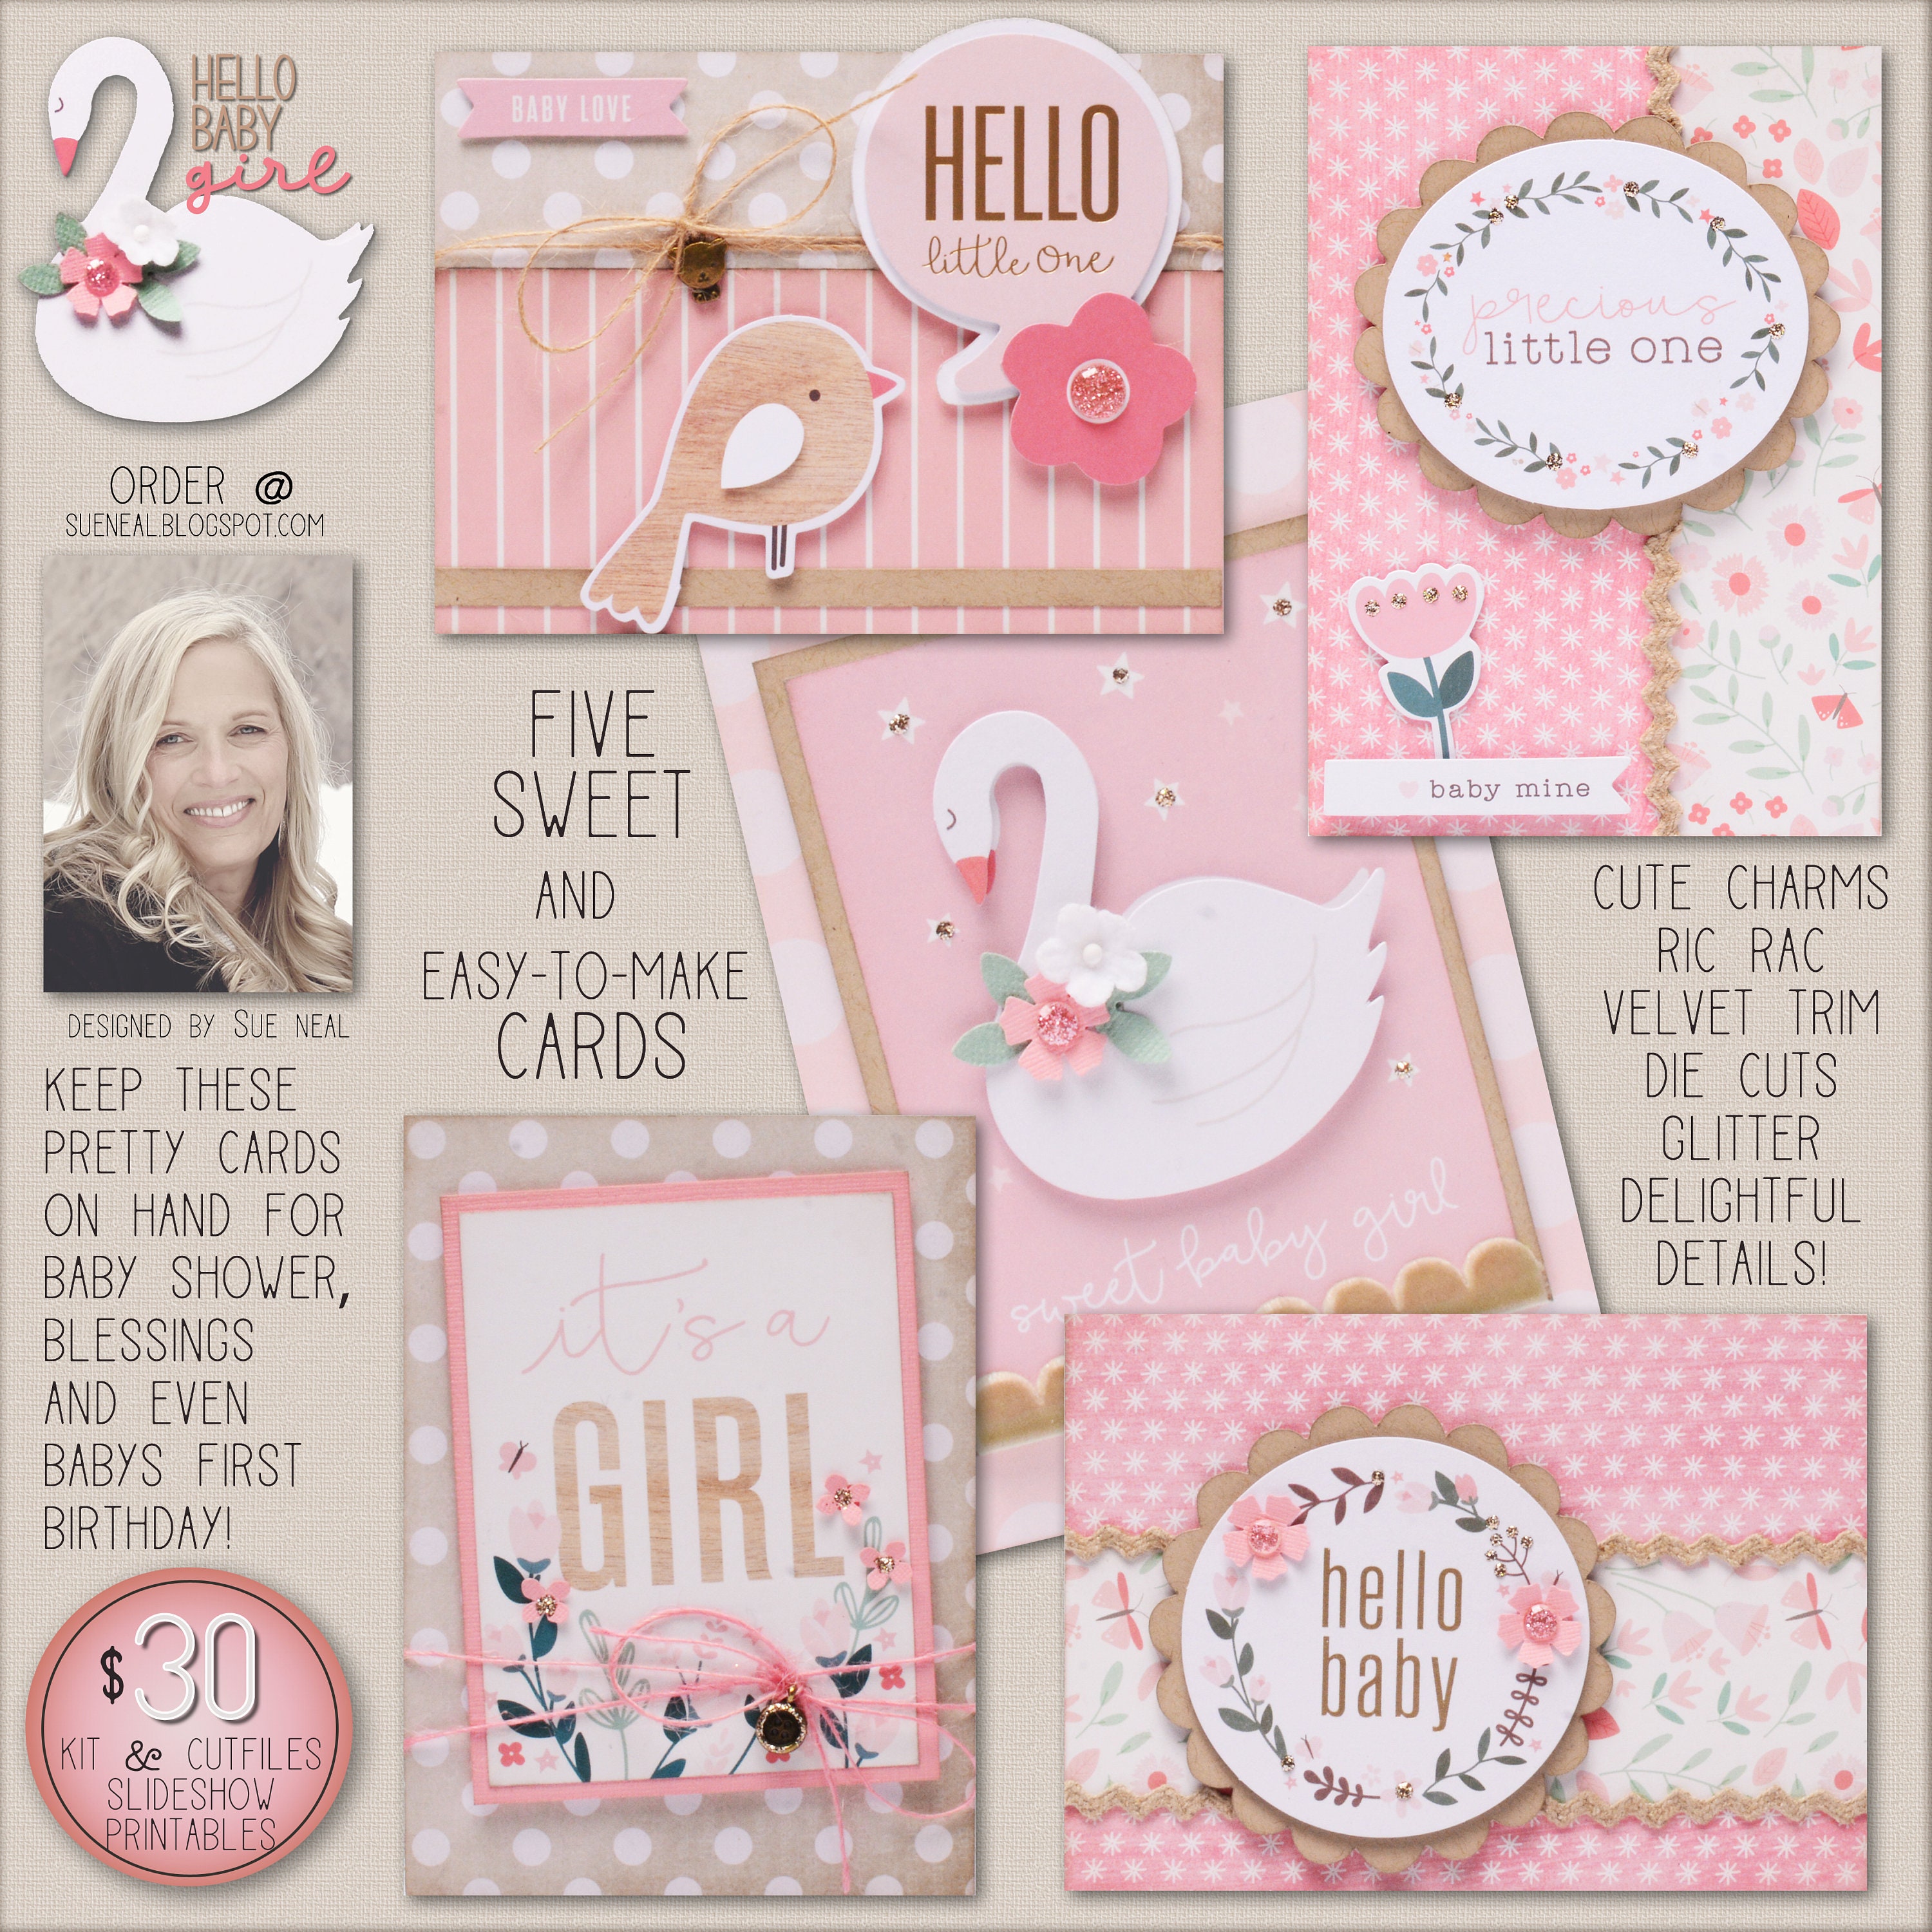 Baby Girl Card Kit - Fundamentals - Card Making Kit at Weekend Kits